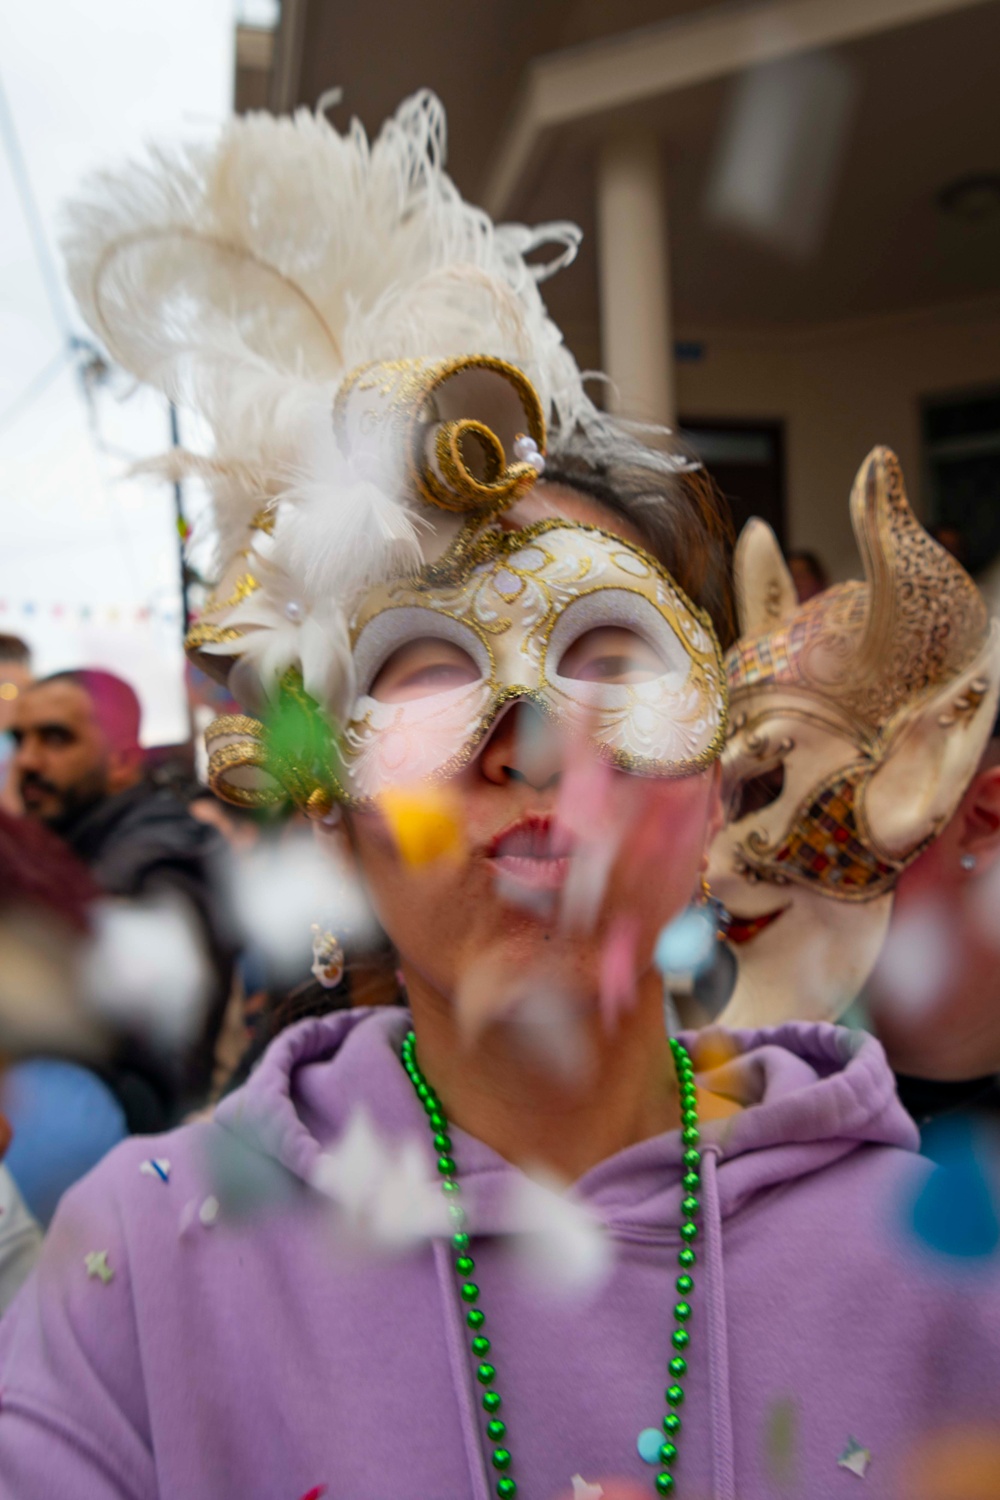 NSA Souda Bay Celebrates Greek Rethymno Carnival with MWR